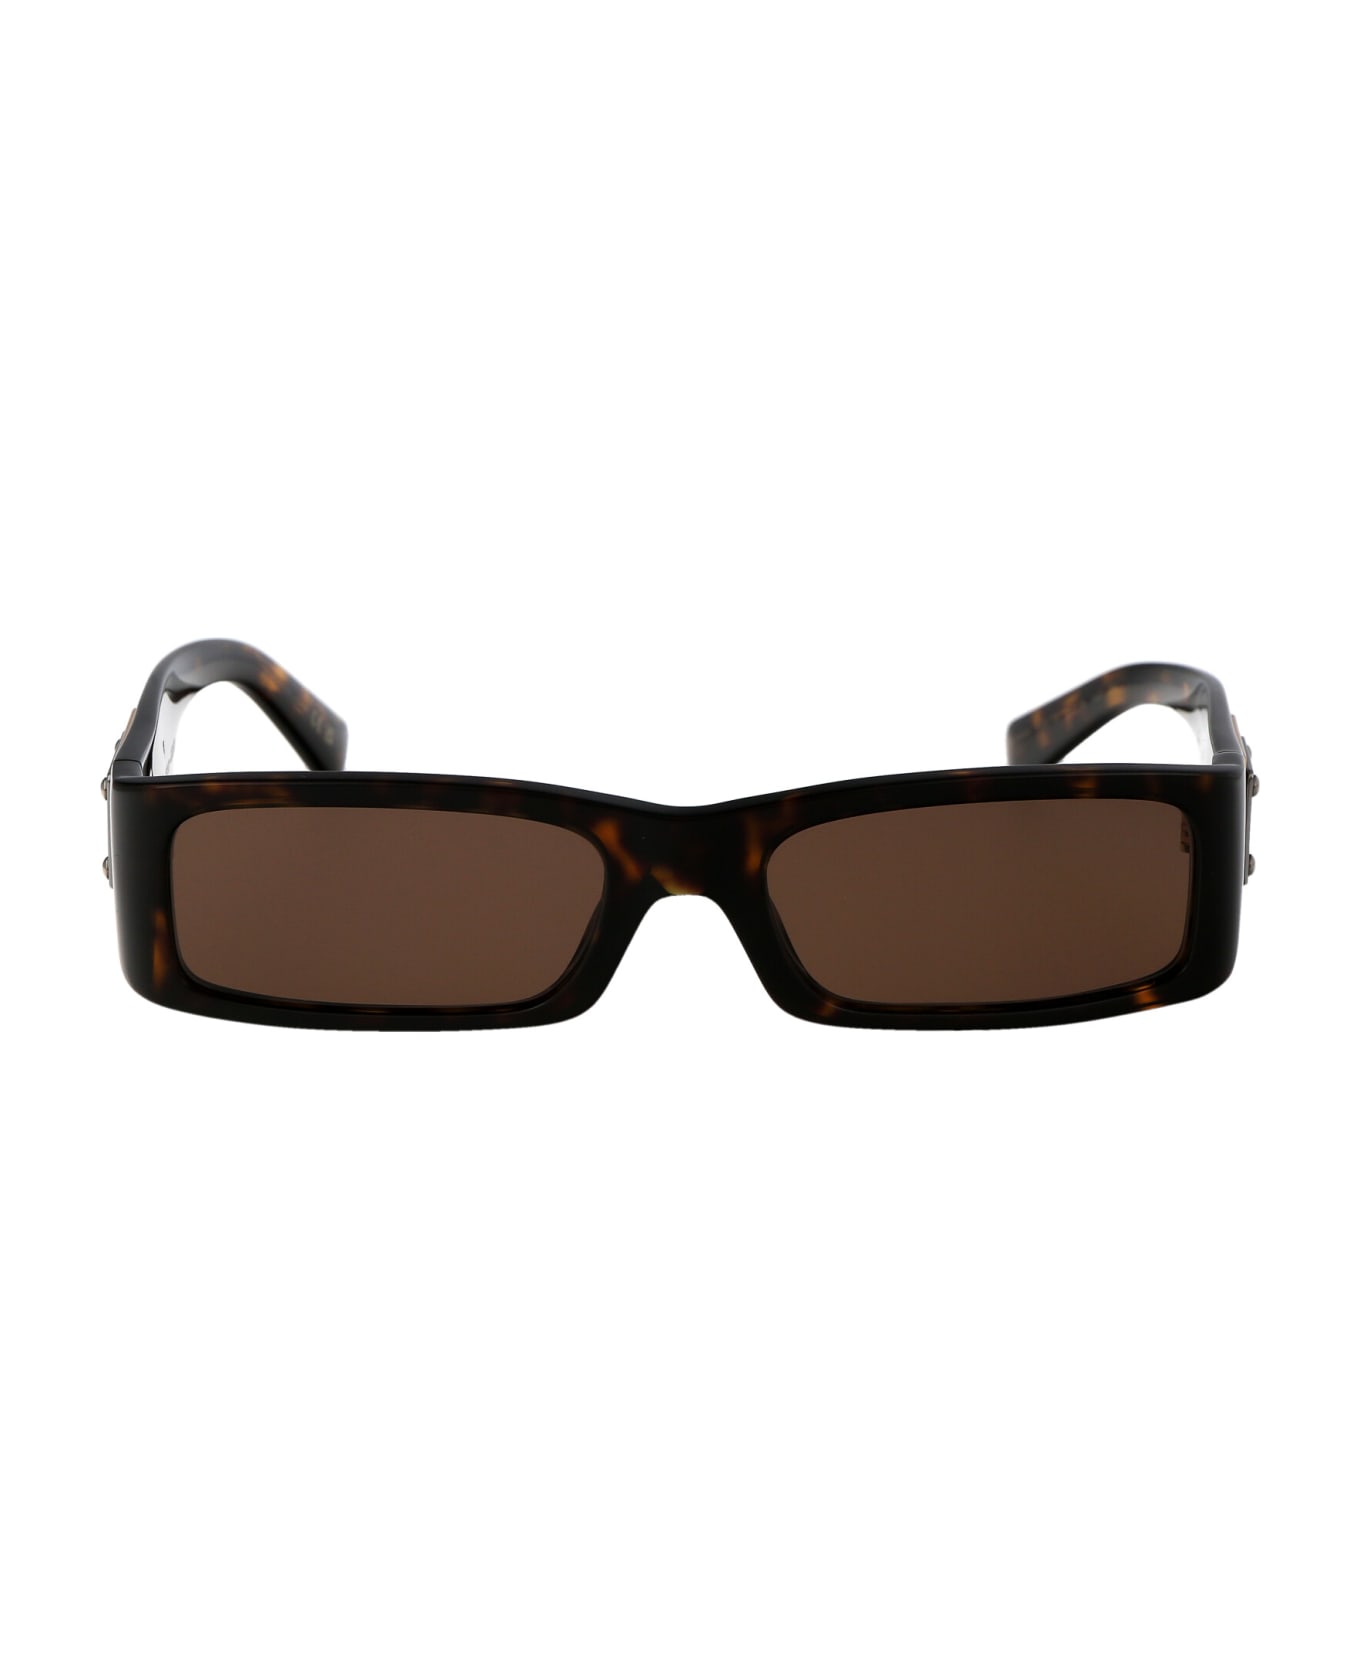 Dolce & Gabbana Eyewear 0dg4444 Sunglasses - 502/73 HAVANA